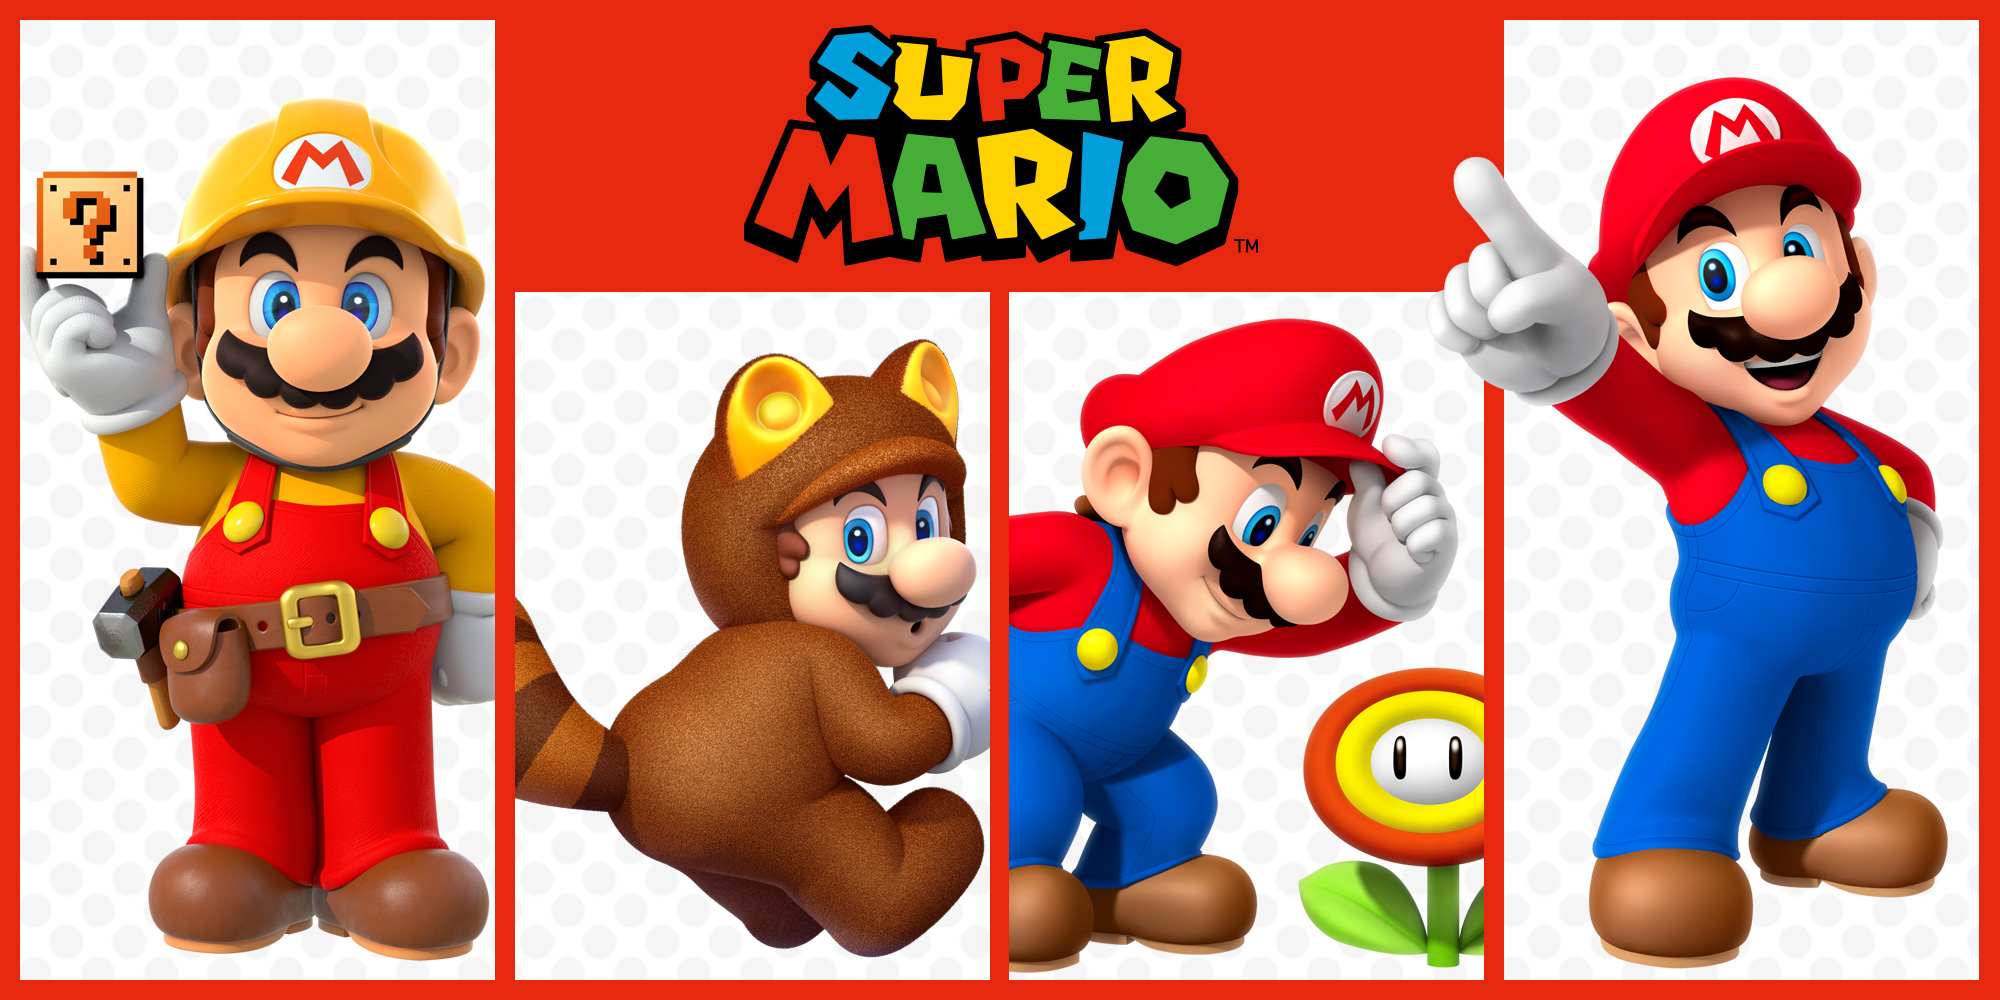 Noch mehr Super Mario gefällig? Dann sind diese Platformer genau das Richtige!